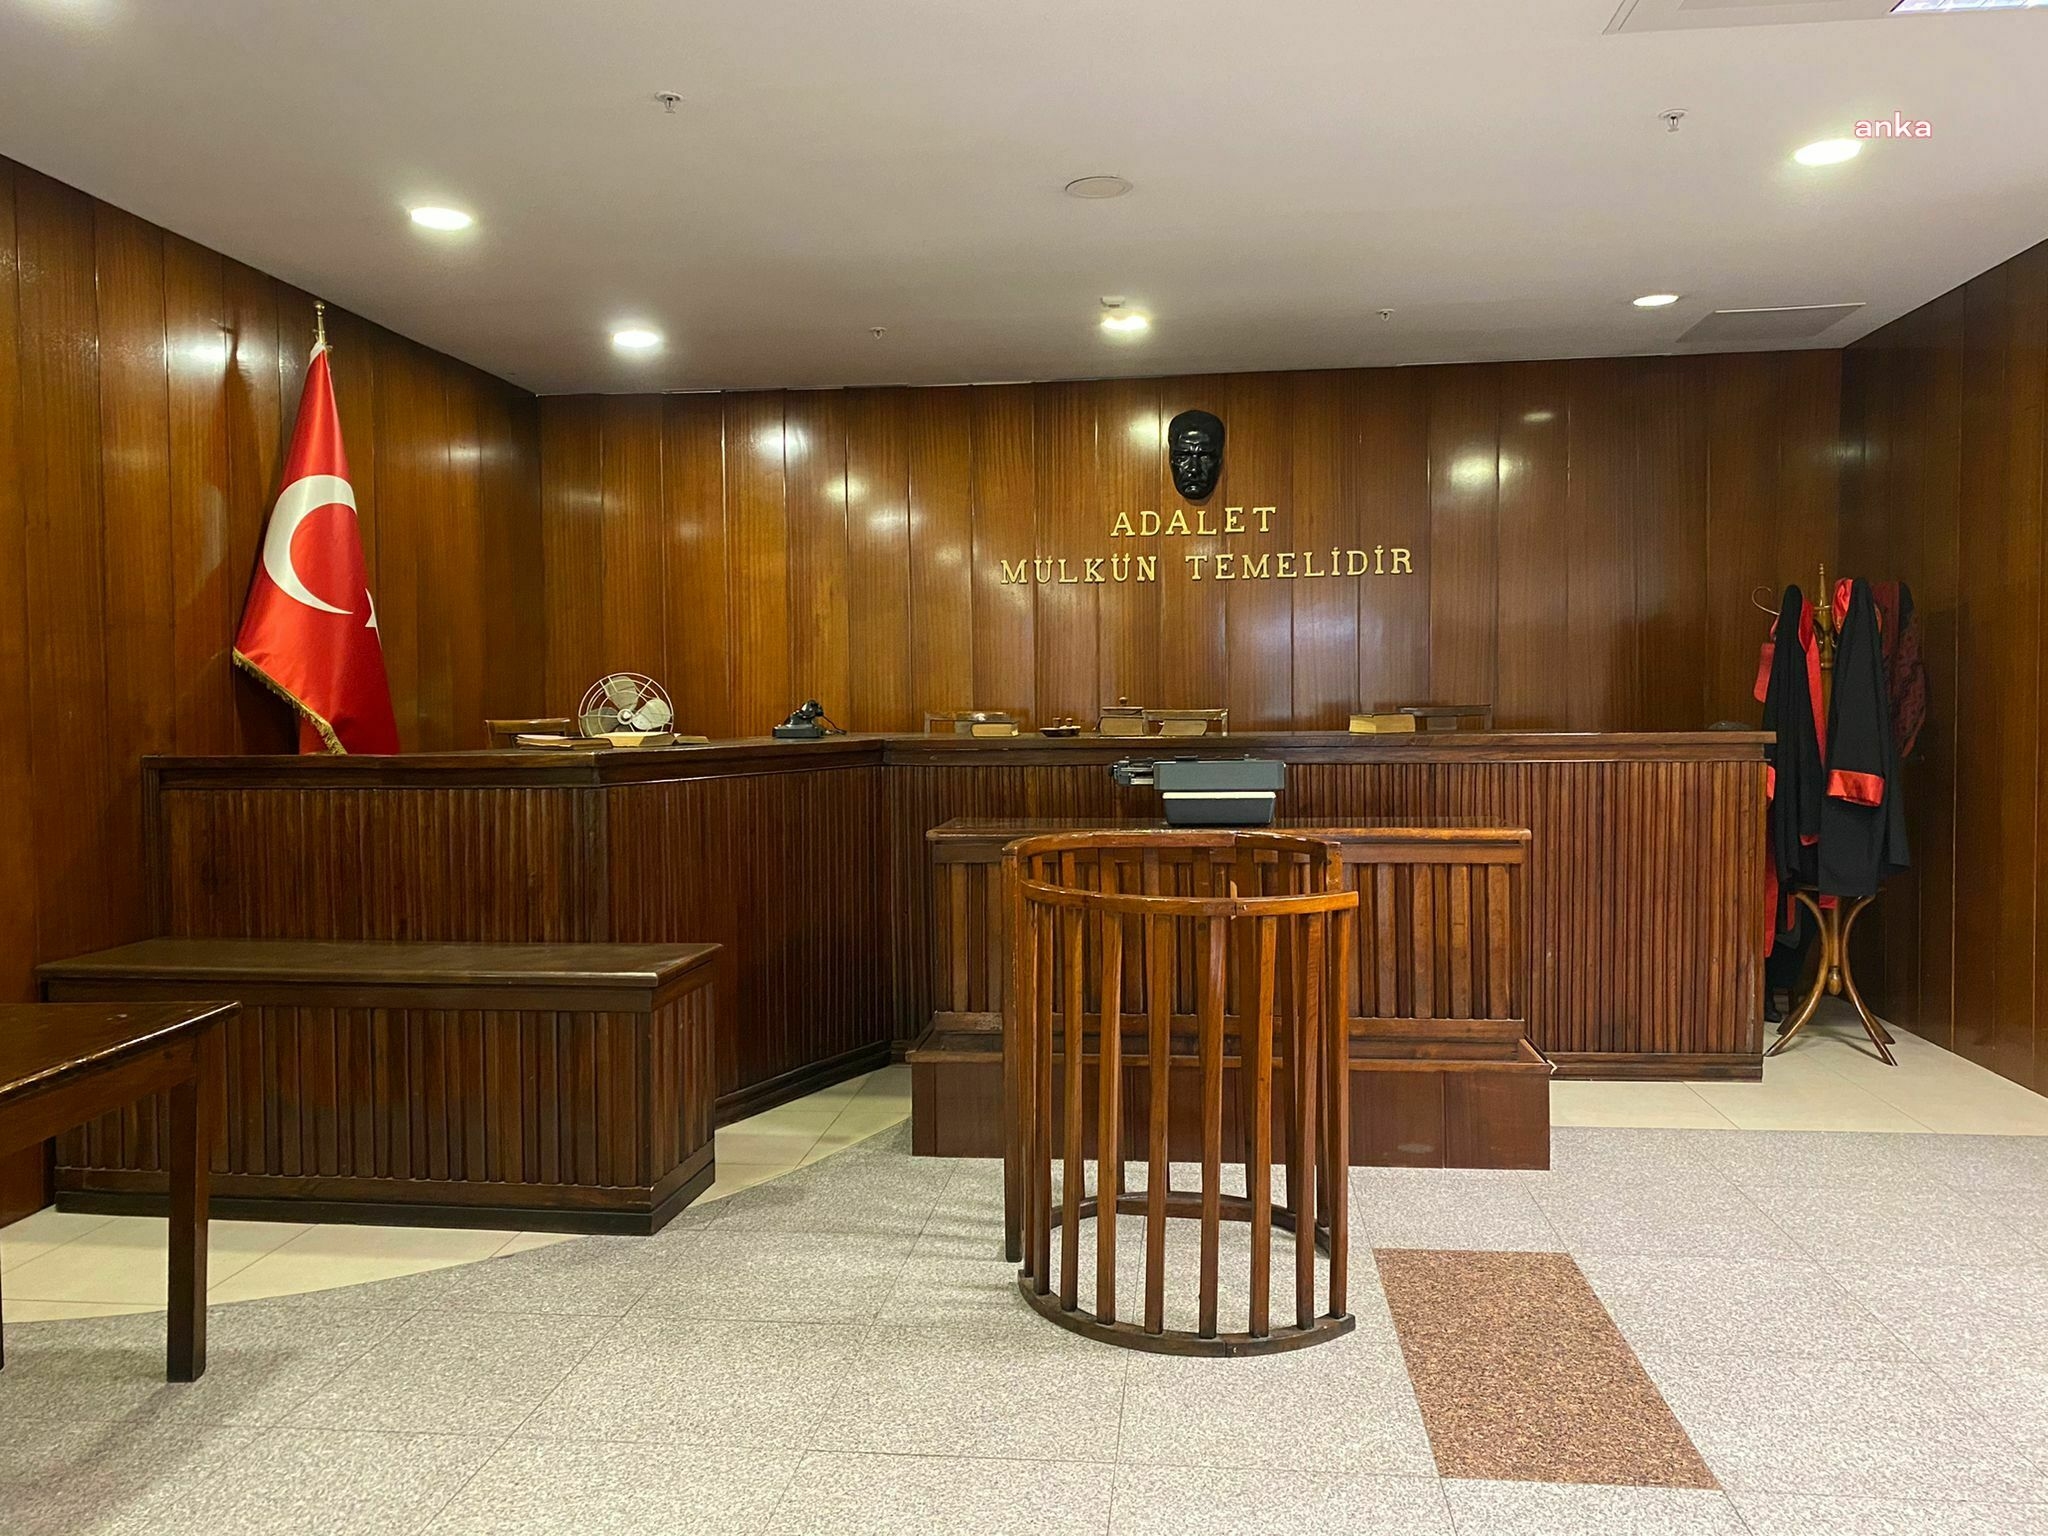 لتجنب الدخول في دعاوى إلغاء الطابو وتثبيته في تركيا يمكن التحقق من حالة العقار القانونية